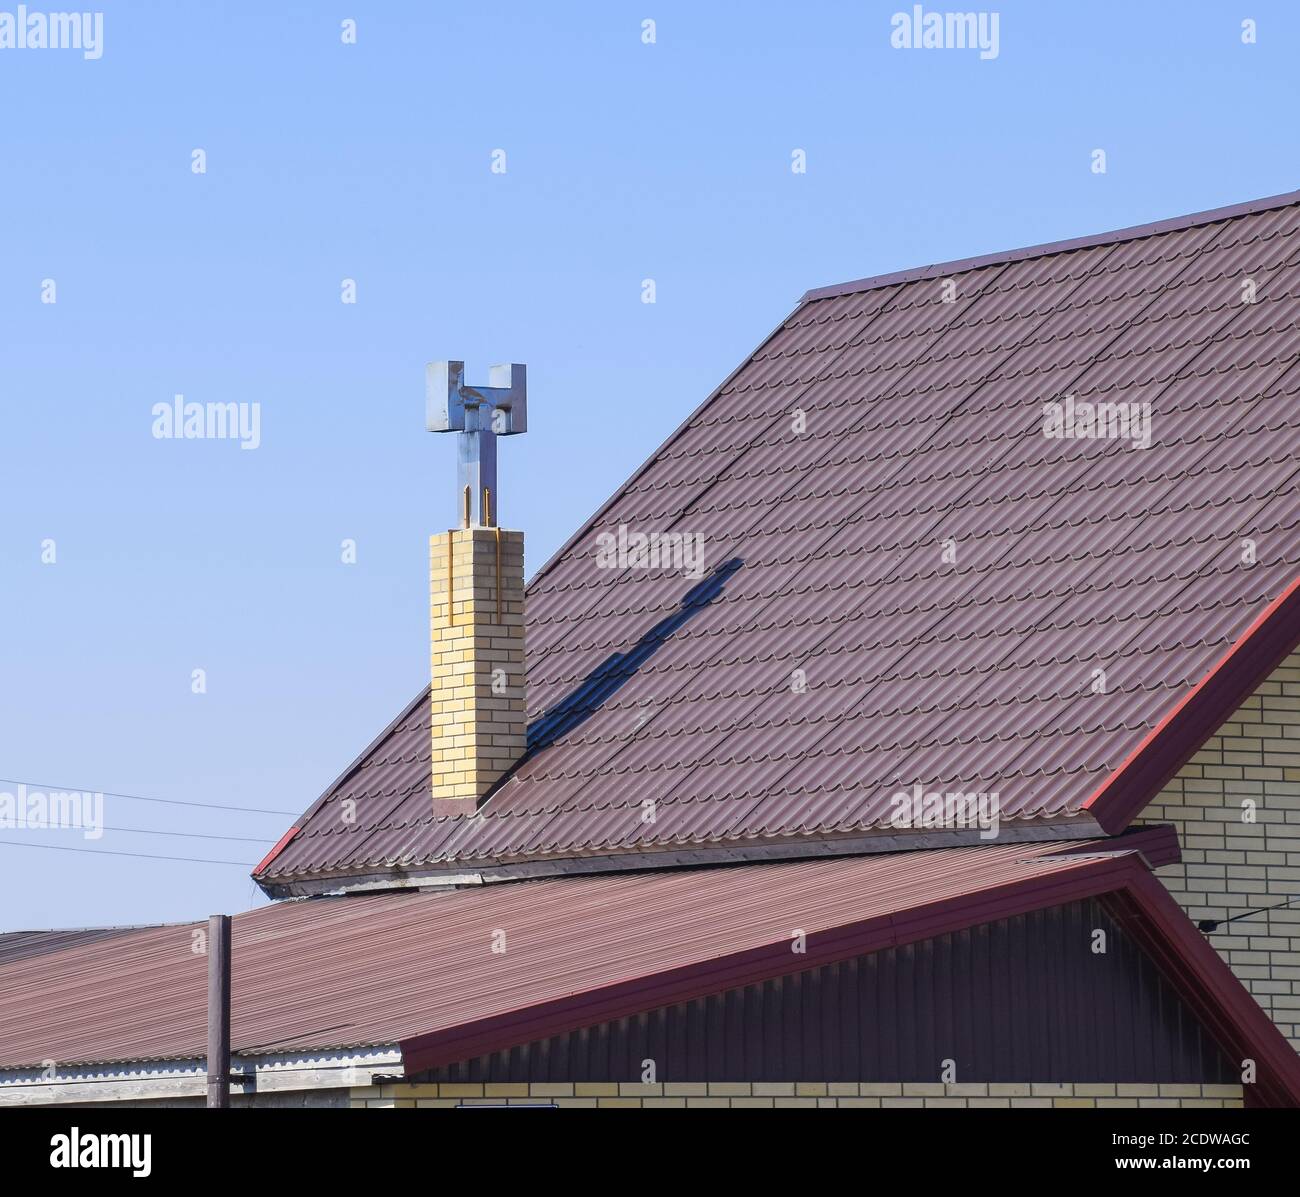 Le toit de tôle ondulée. Profil de métal ondulé brun toit. Banque D'Images